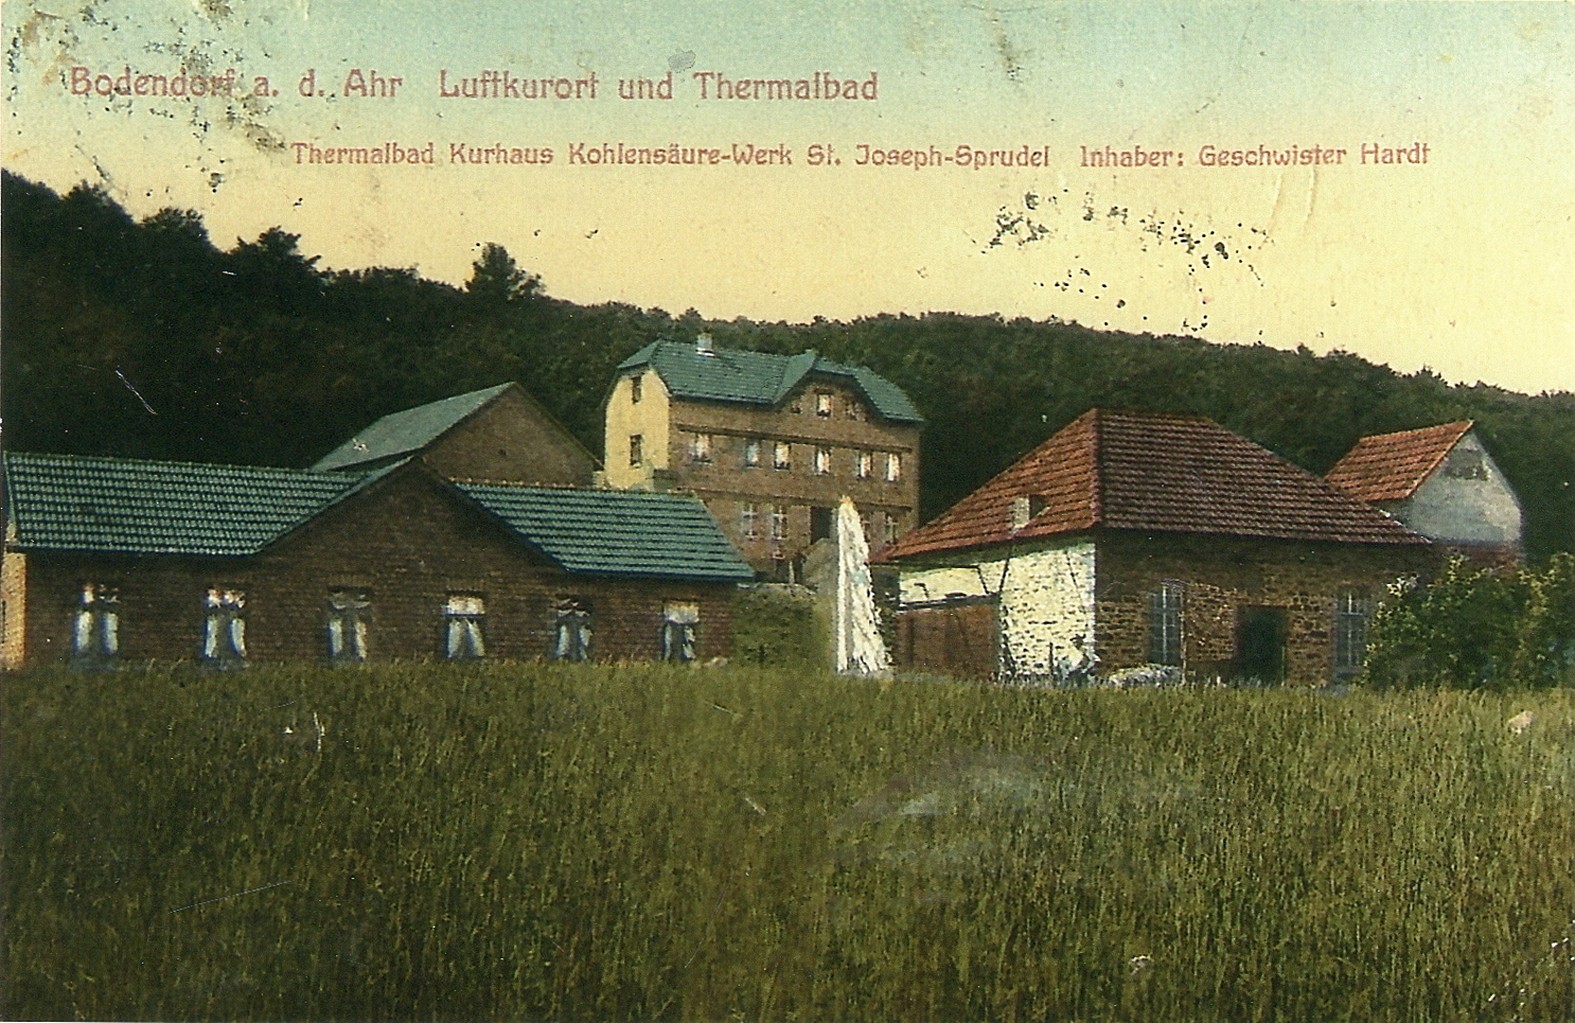 Foto des Kurhotel Bodendorf mit Bäderhaus und Kohlensäurewerk (Heimatmuseum und -Archiv Bad Bodendorf CC BY-NC-SA)